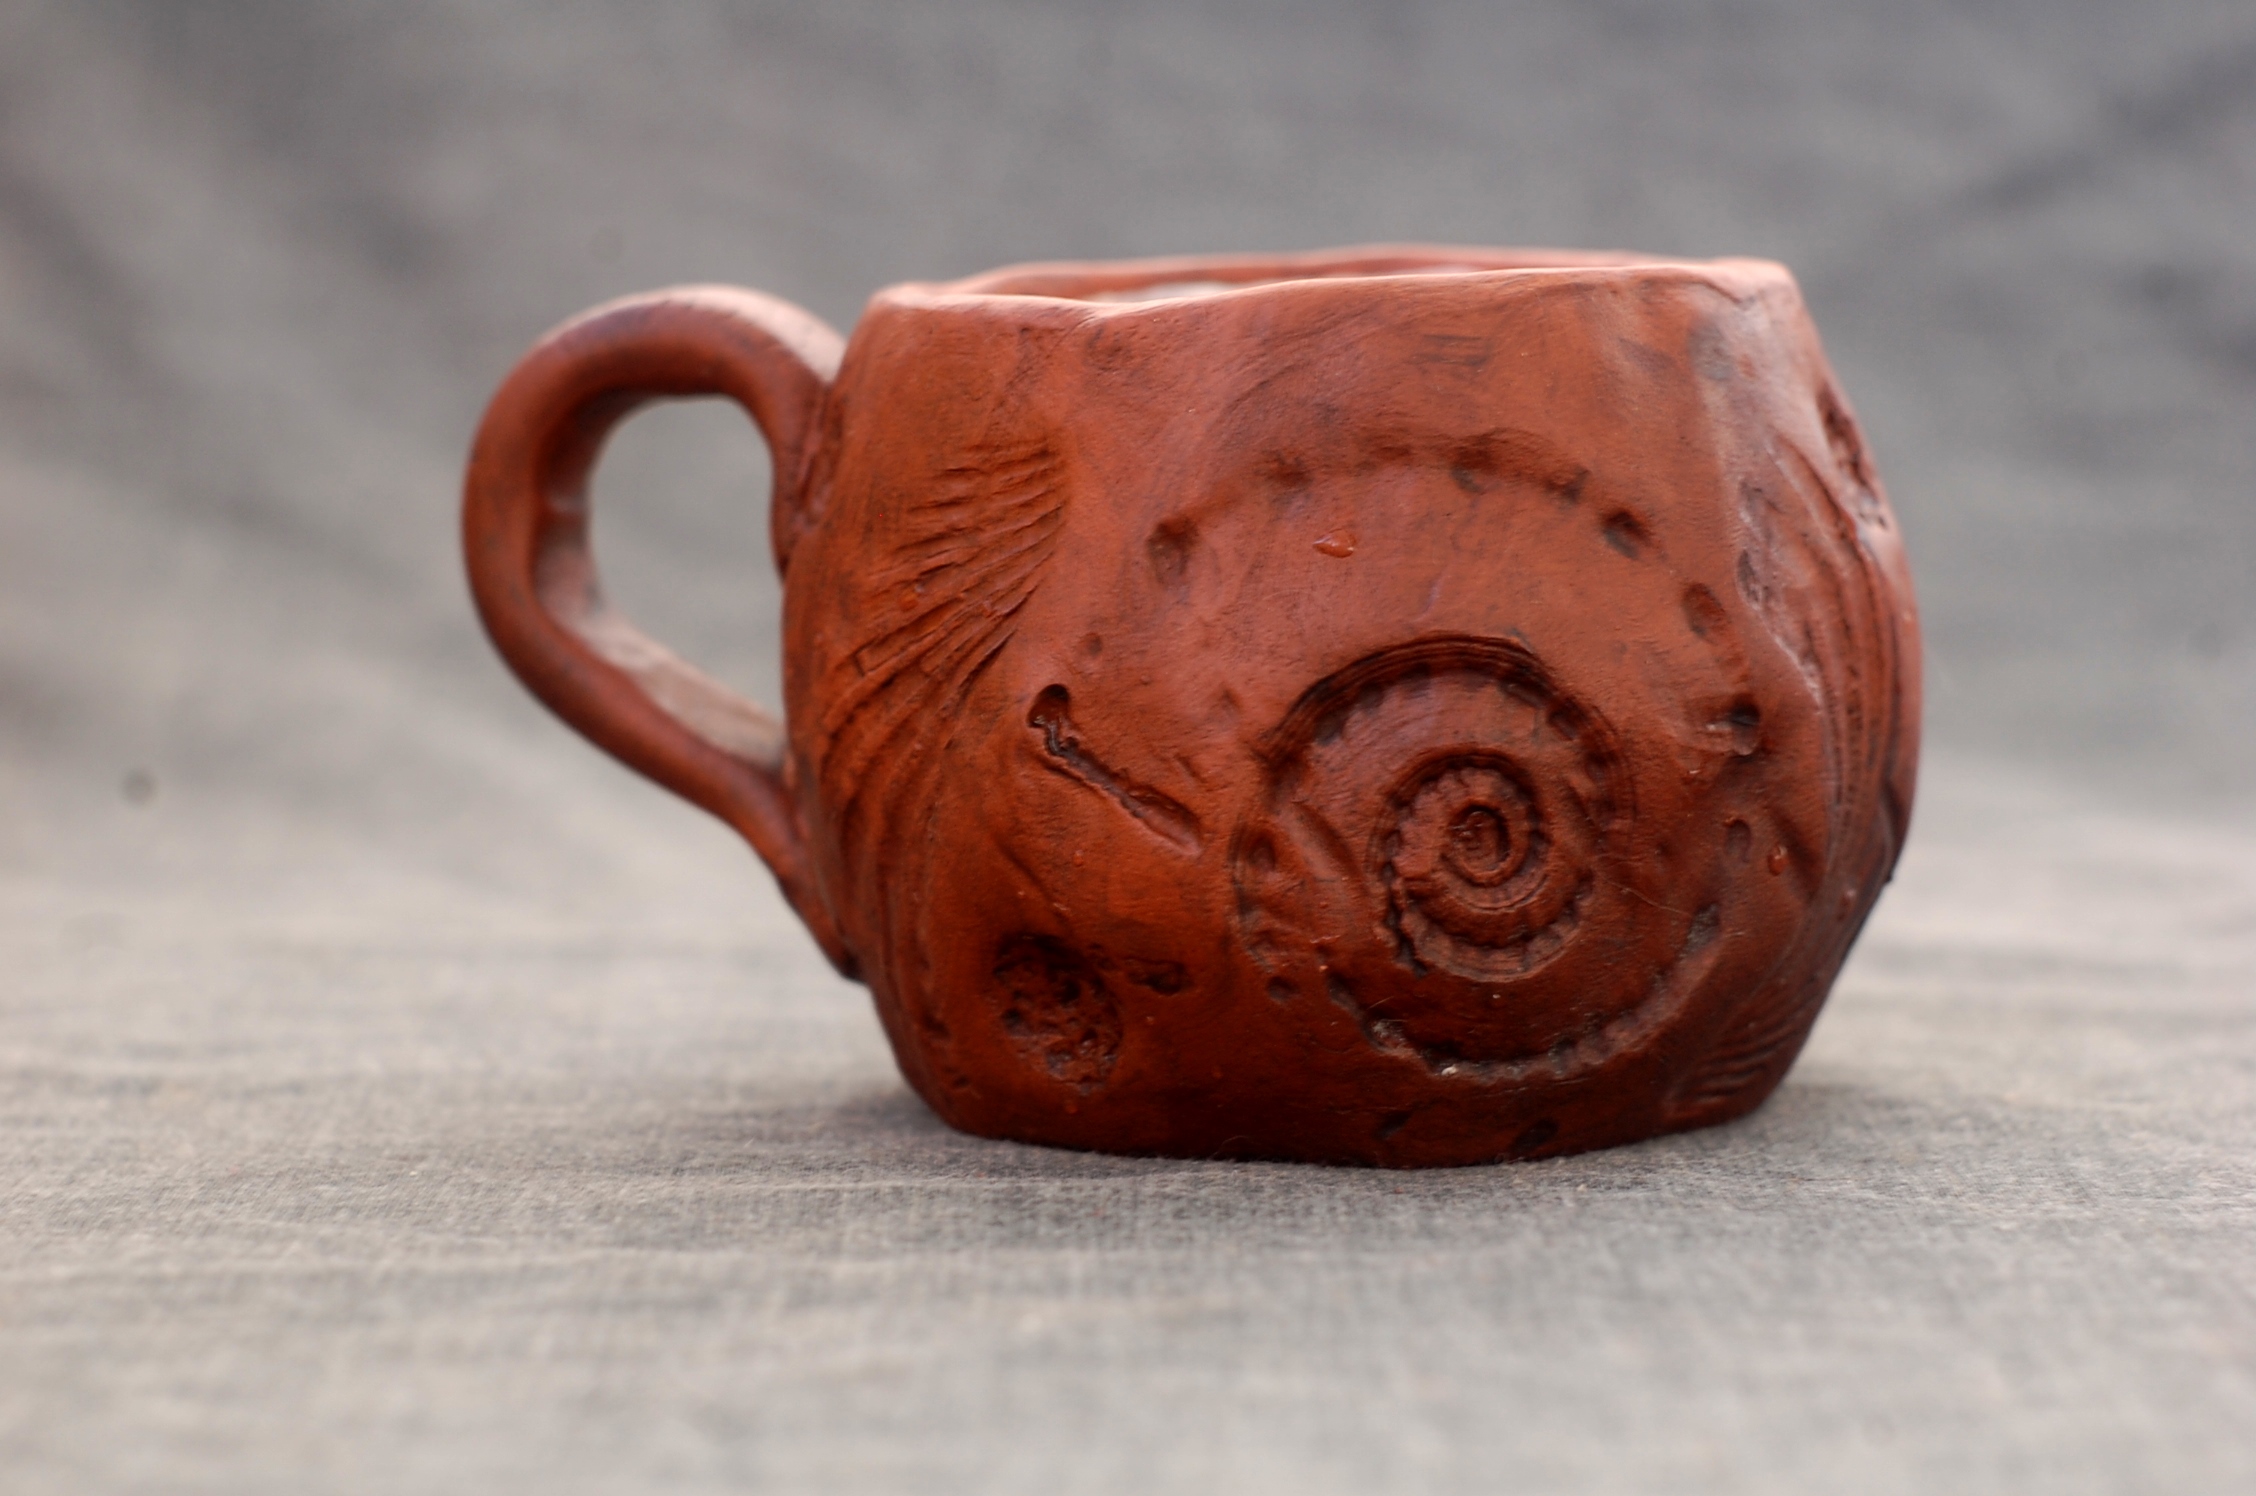 Handmade pottery mug "Sea" with handle